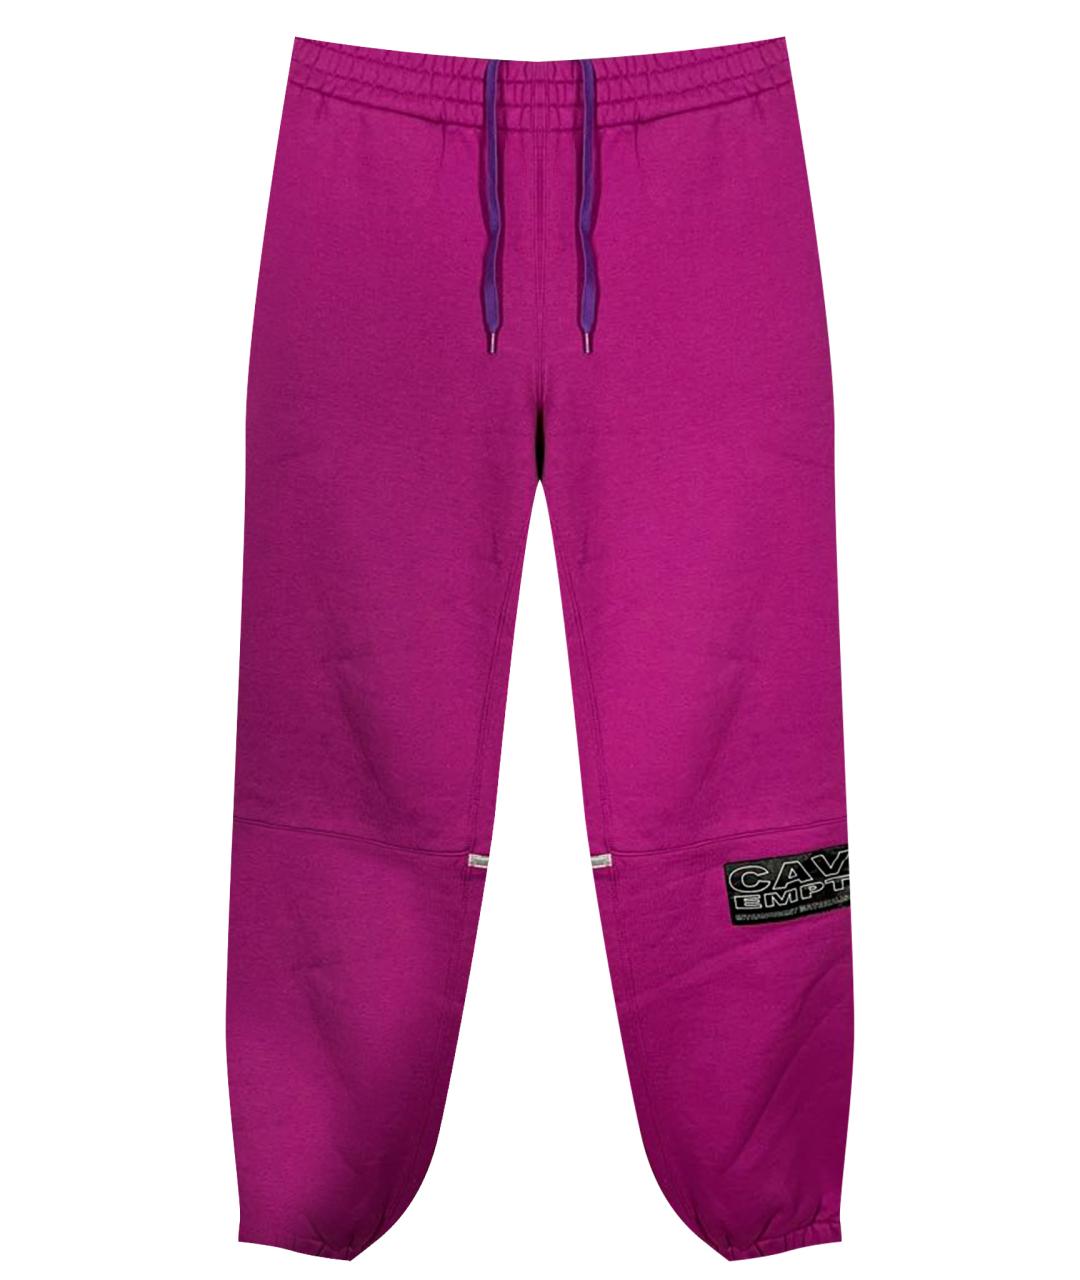 CAV EMPT Фиолетовые хлопковые спортивные брюки и шорты, фото 1